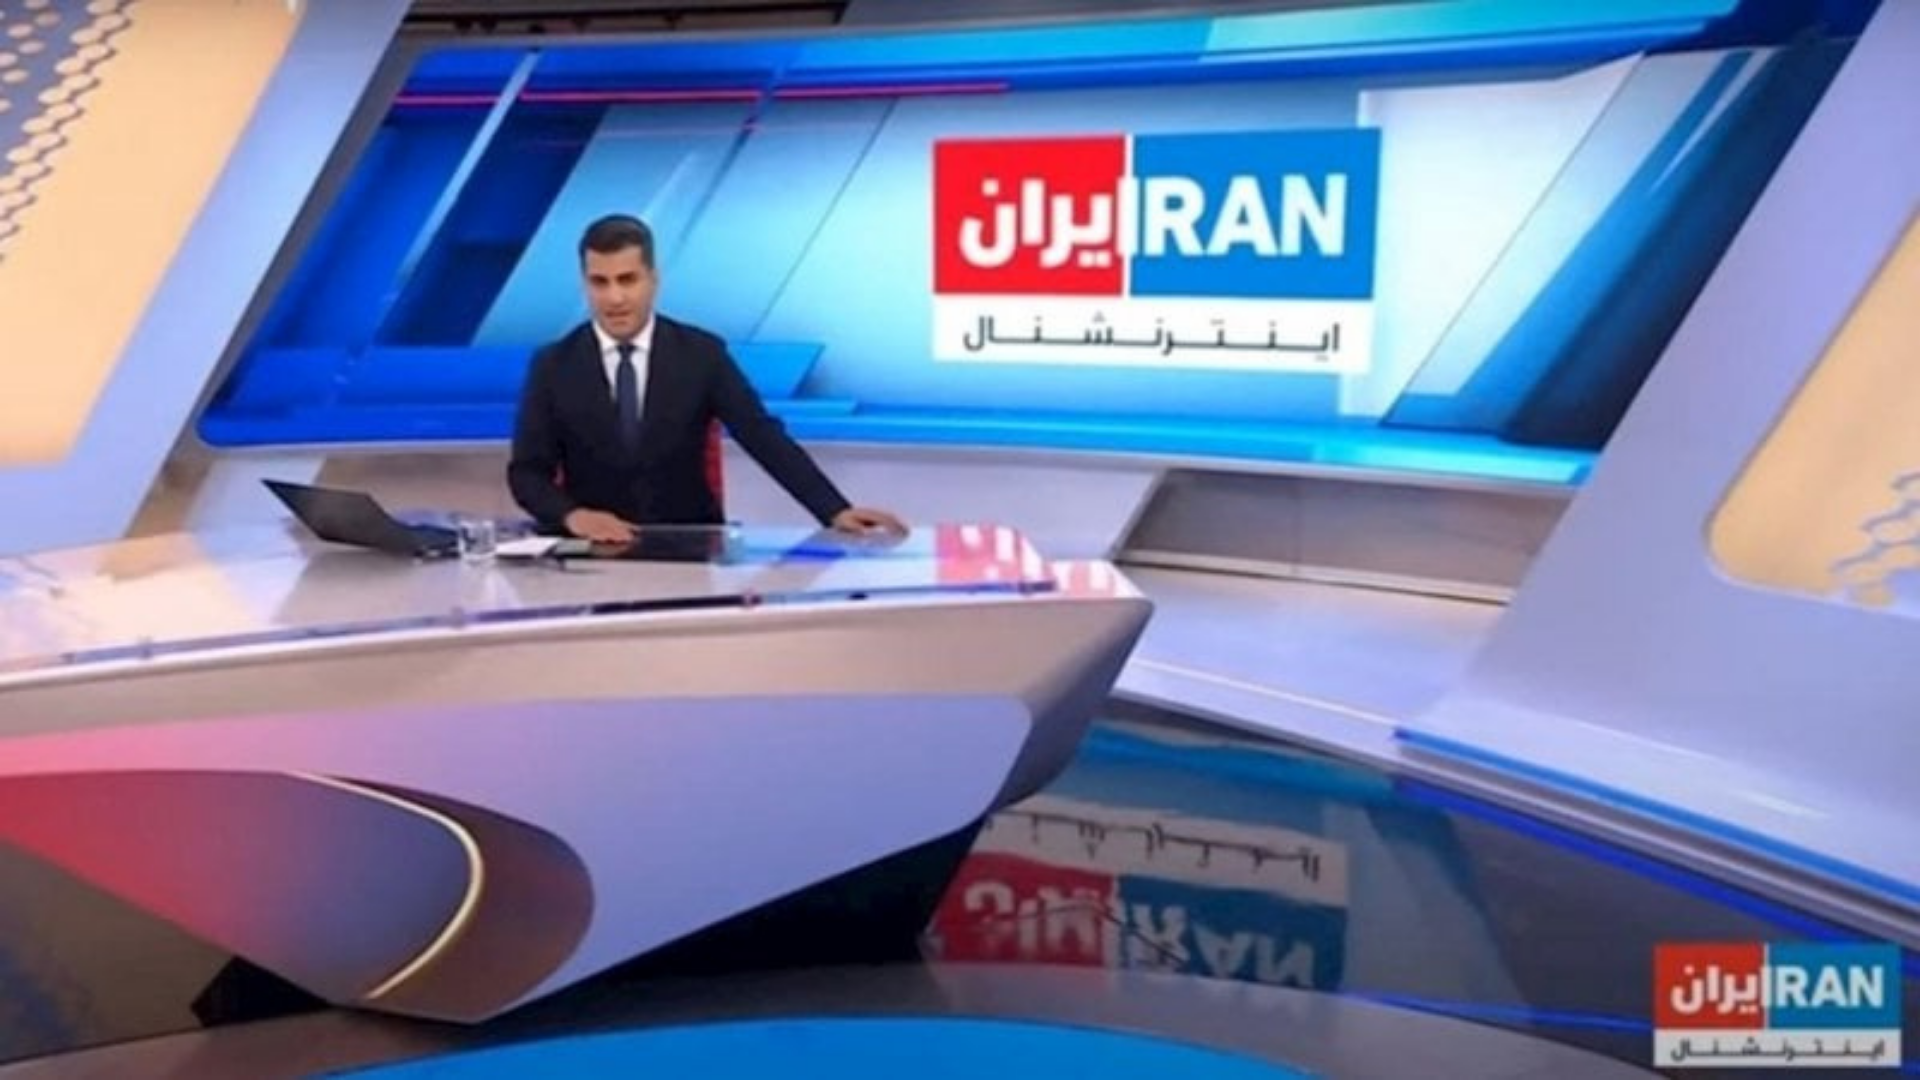 i24 NEWS ARABIC